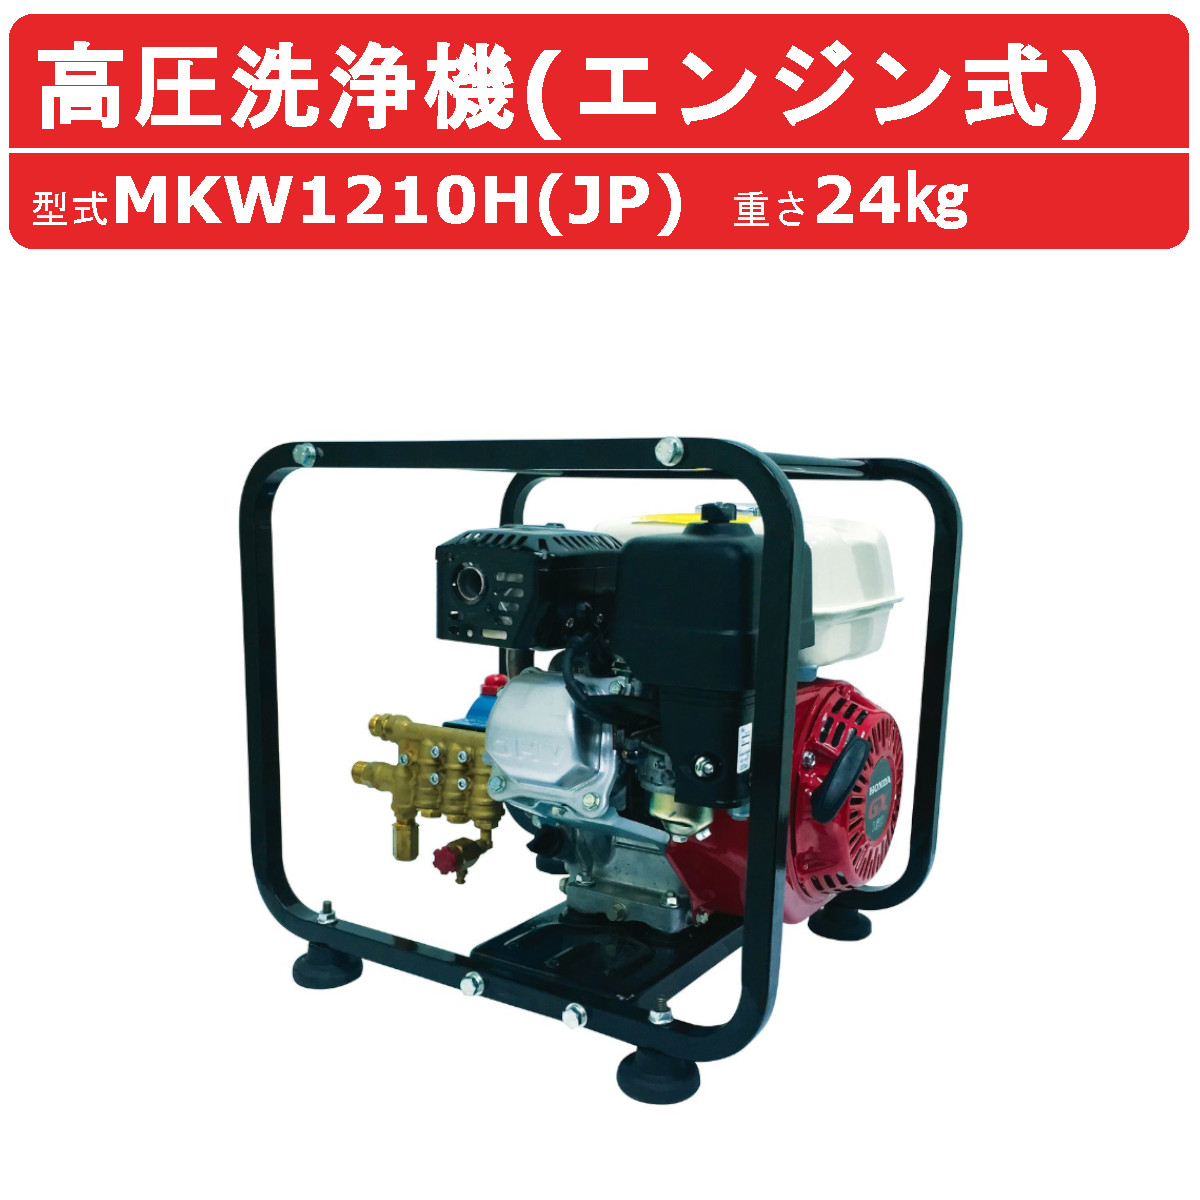 丸山製作所 高圧洗浄機 MKW1210H-1 (JP) 旧型式 MKW1210H (JP 